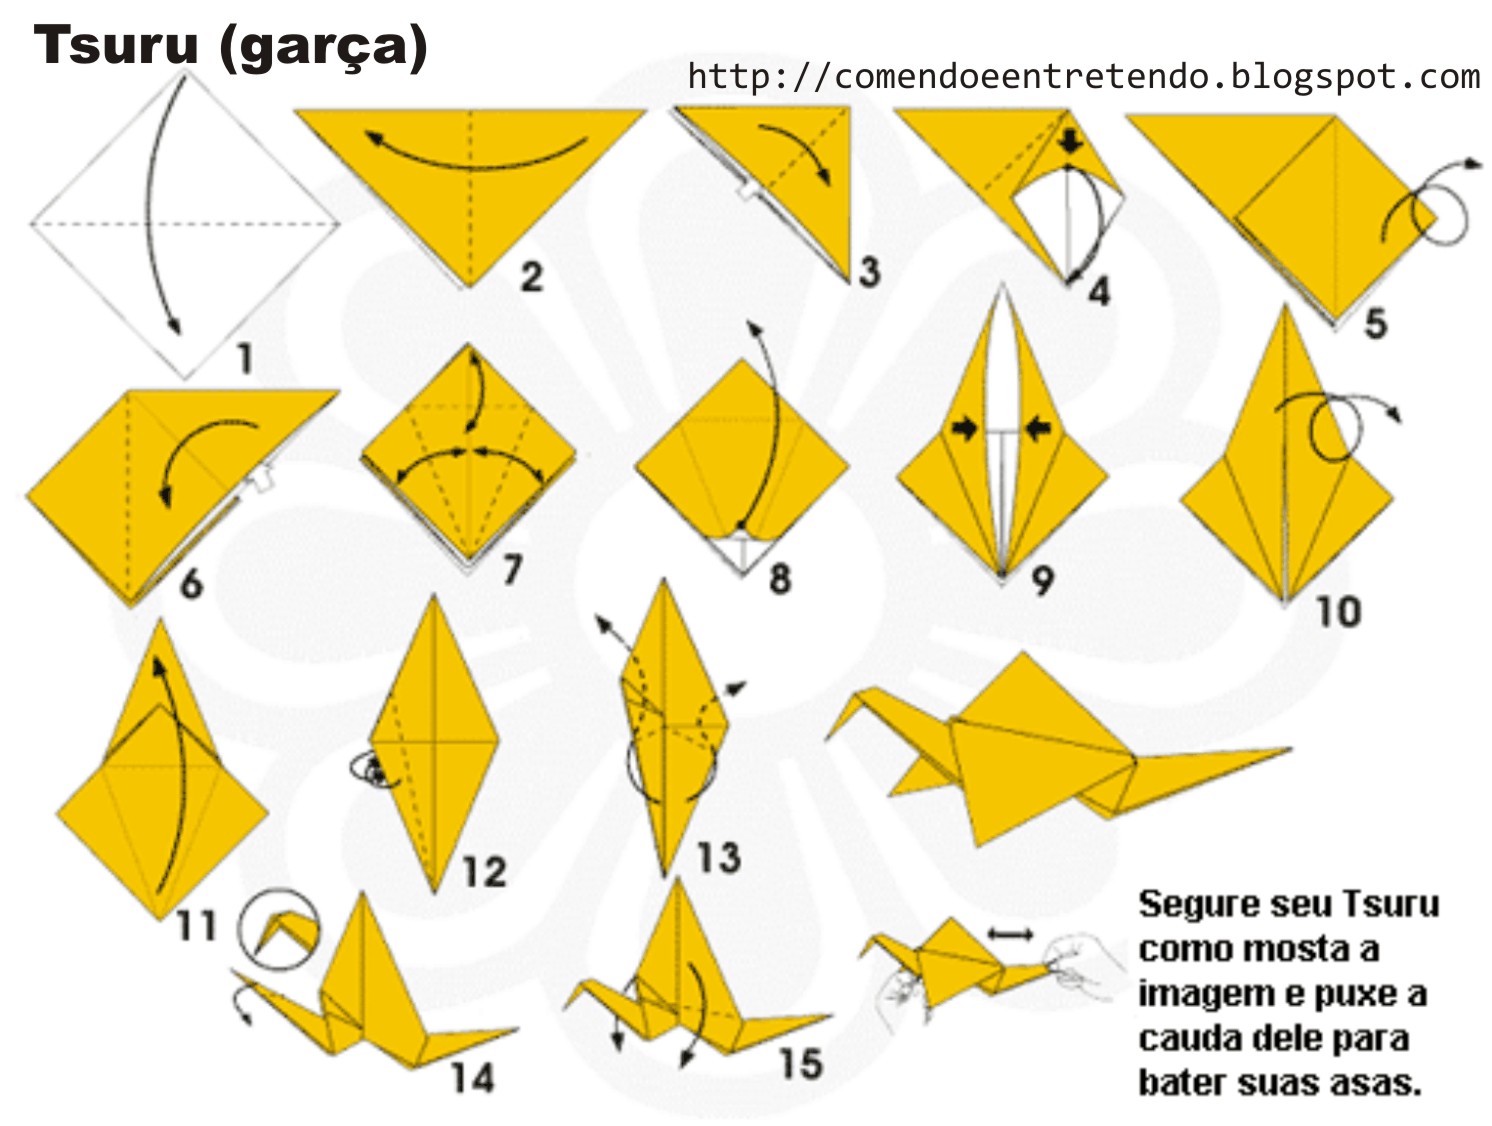 Сделать журавлика оригами пошаговая инструкция для начинающих. Журавлик оригами из бумаги пошагово для детей. Журавлик Цуру. Журавль Цуру оригами. Японский Журавлик Цуру оригами схема.